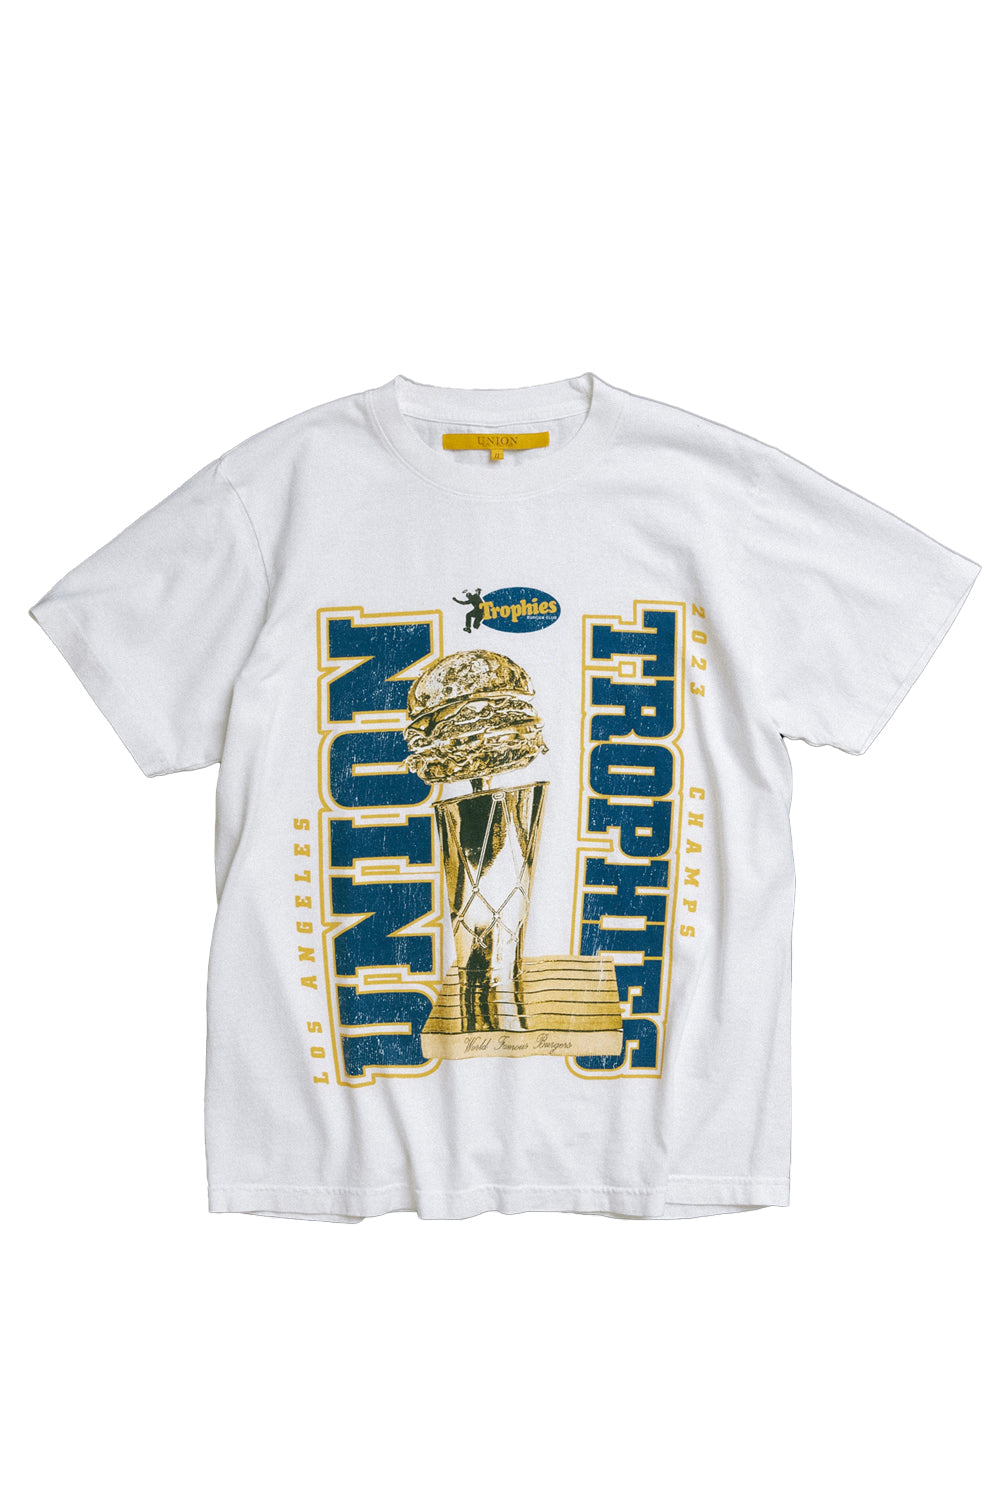 Union X Trophies Burger T-Shirt